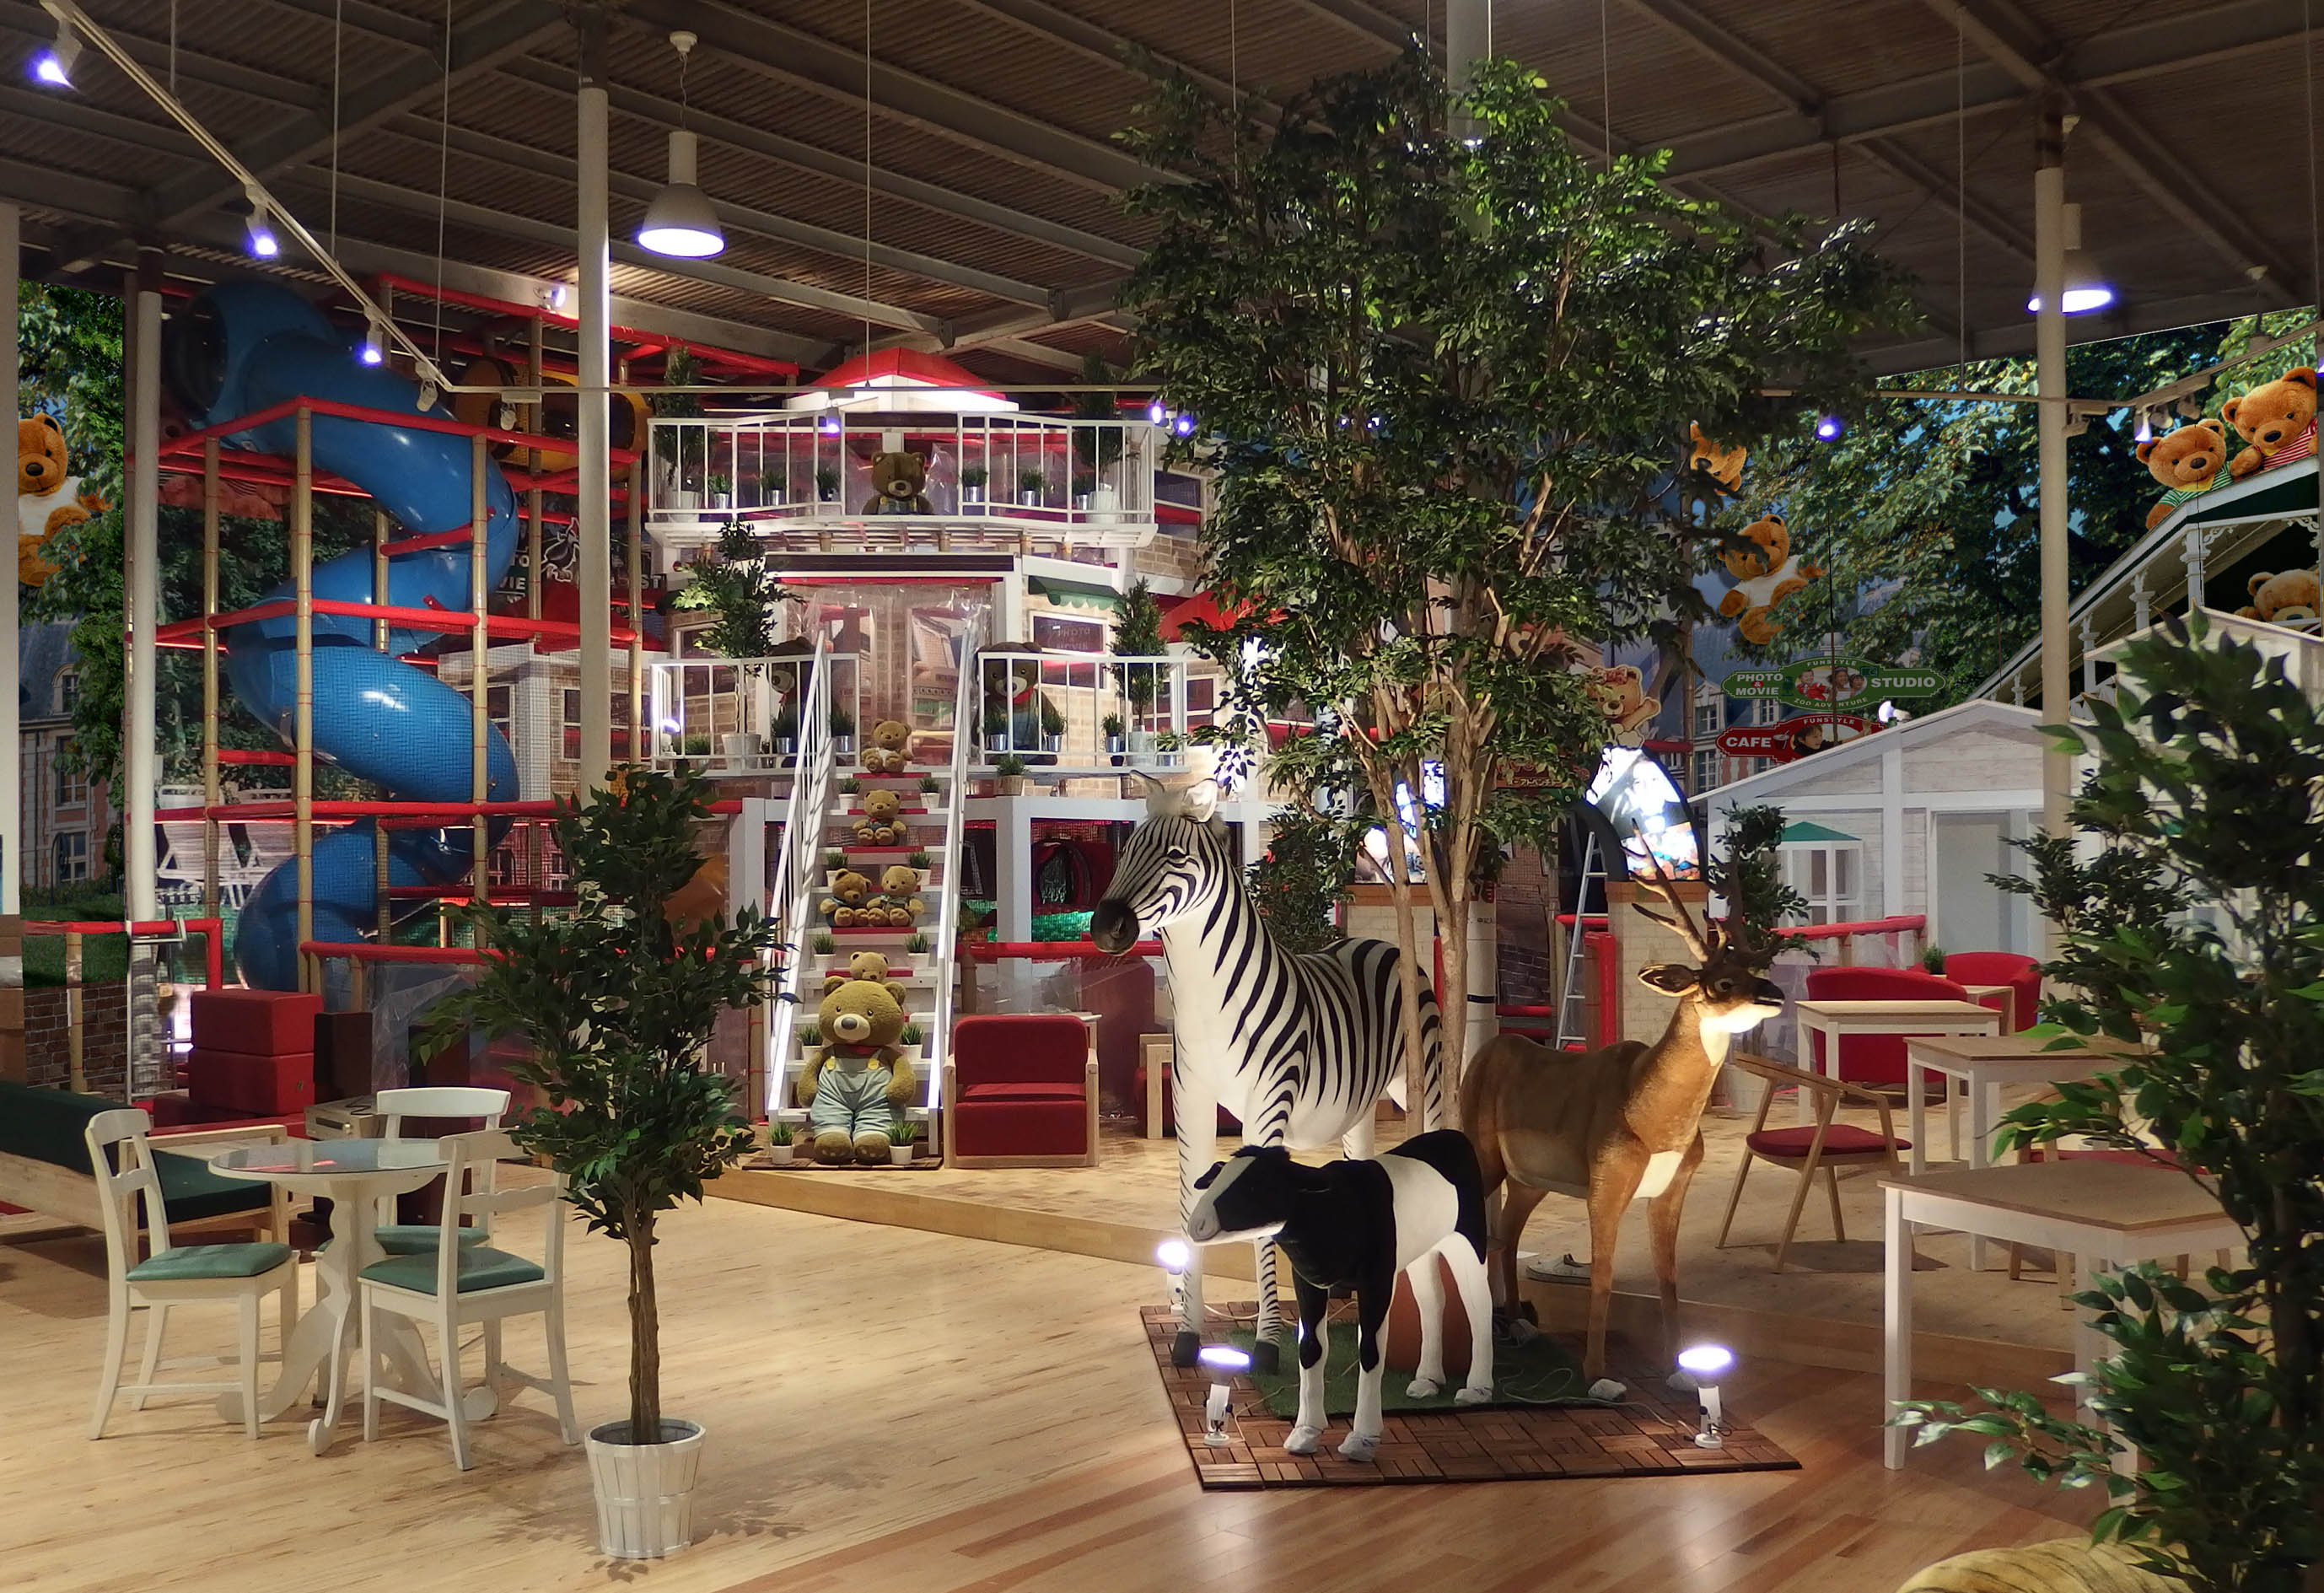 Picnic Cafe Wangan Zoo Adventure Attractions In Kachidoki Tokyo